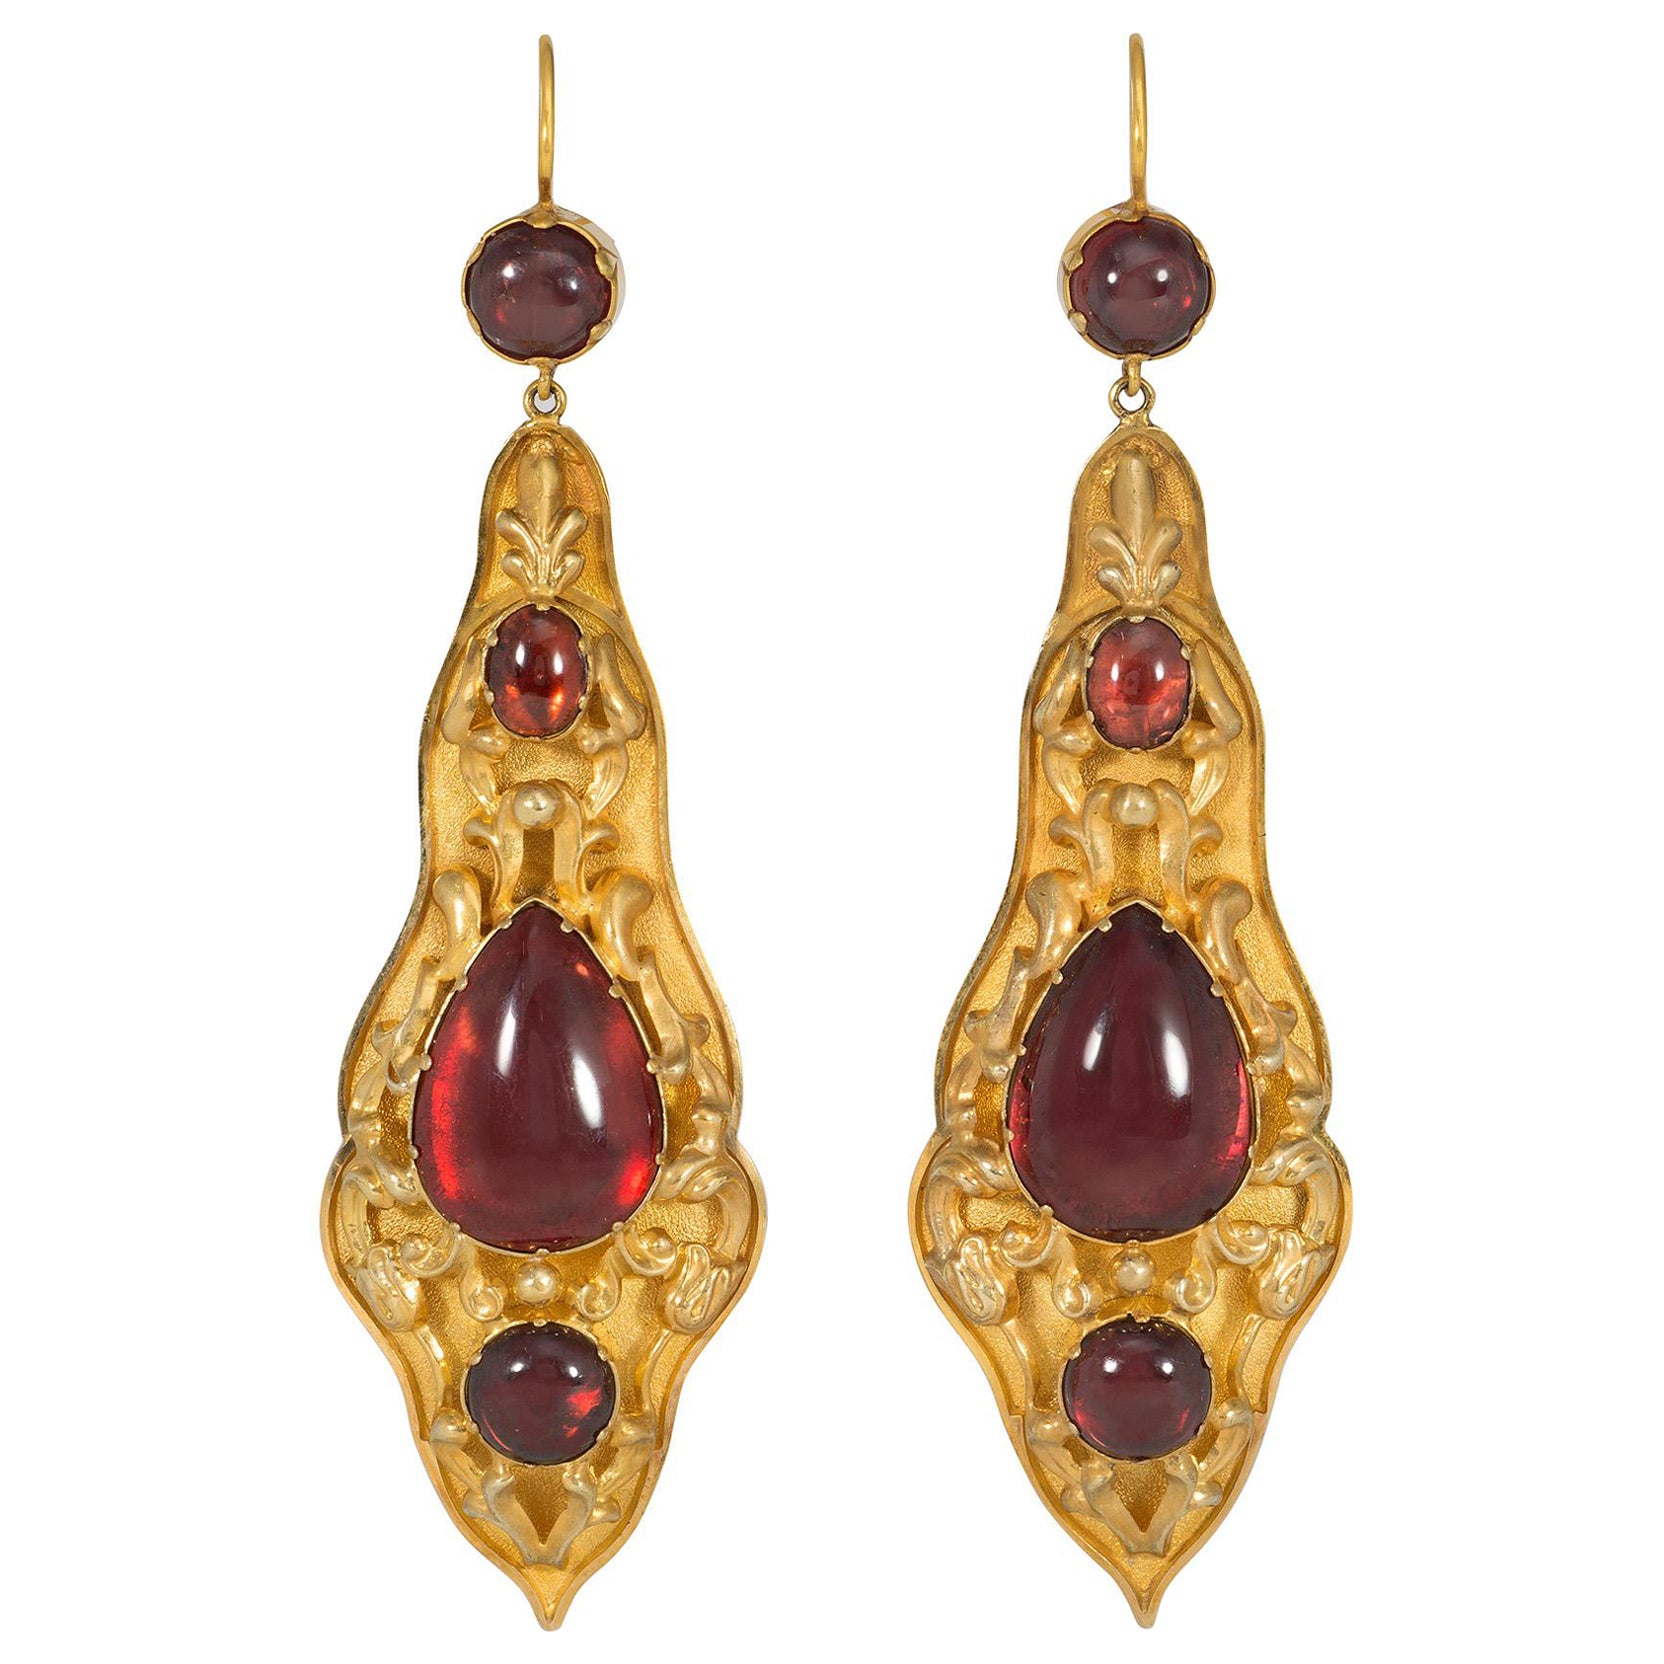 Antique Gold and Cabochon Garnet Pendant Earrings with Repoussé Decoration